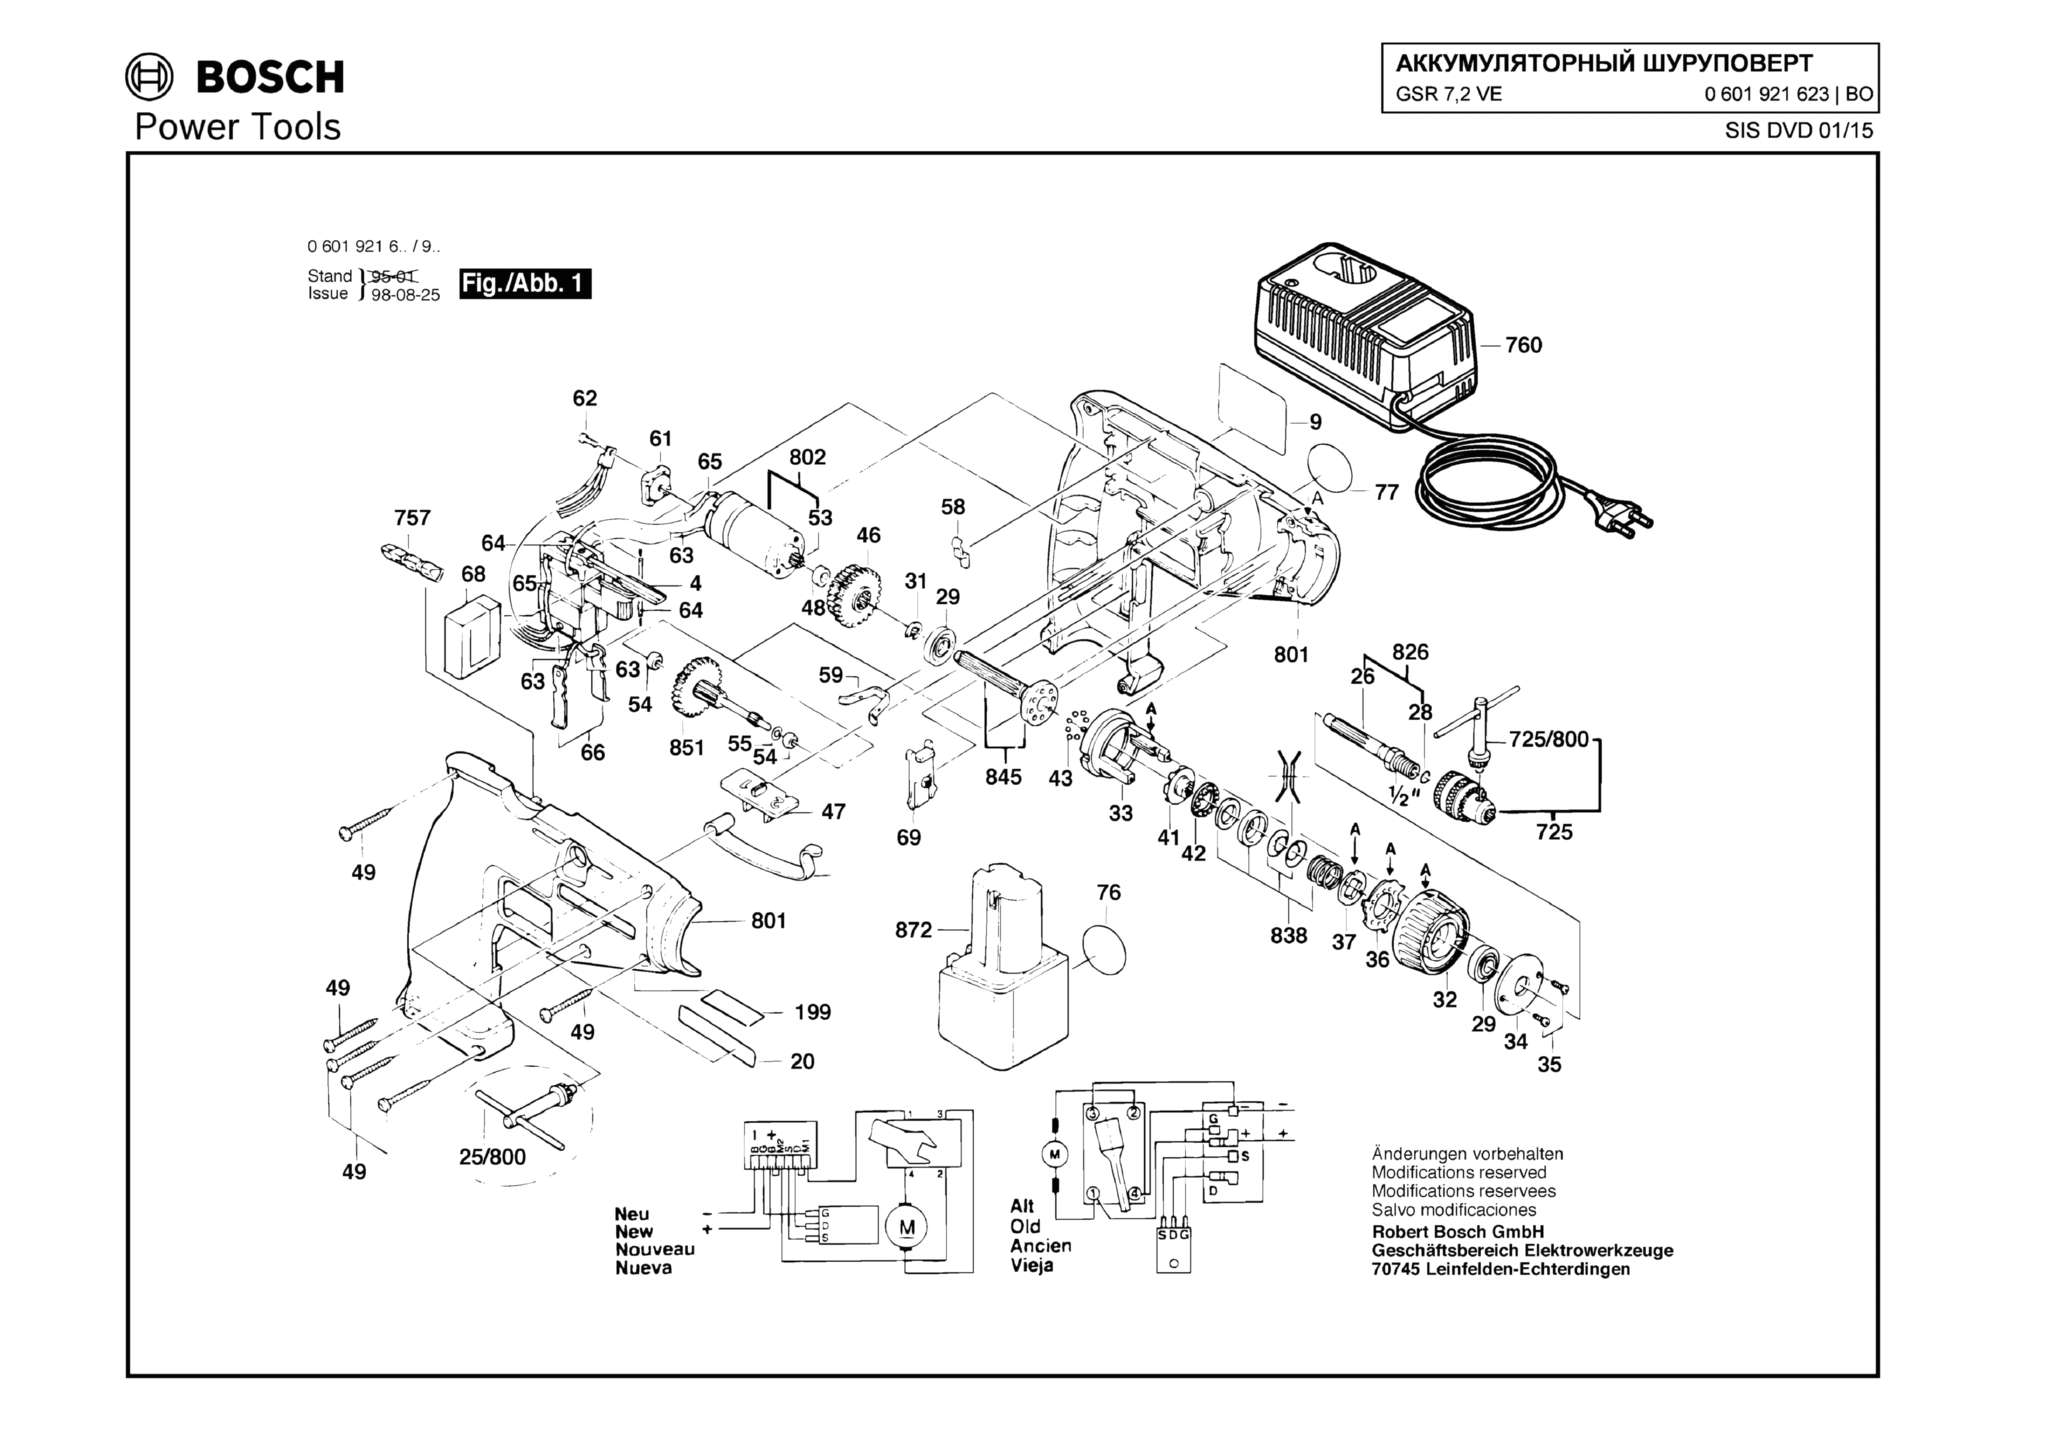 Запчасти, схема и деталировка Bosch GSR 7,2 VE (ТИП 0601921623)